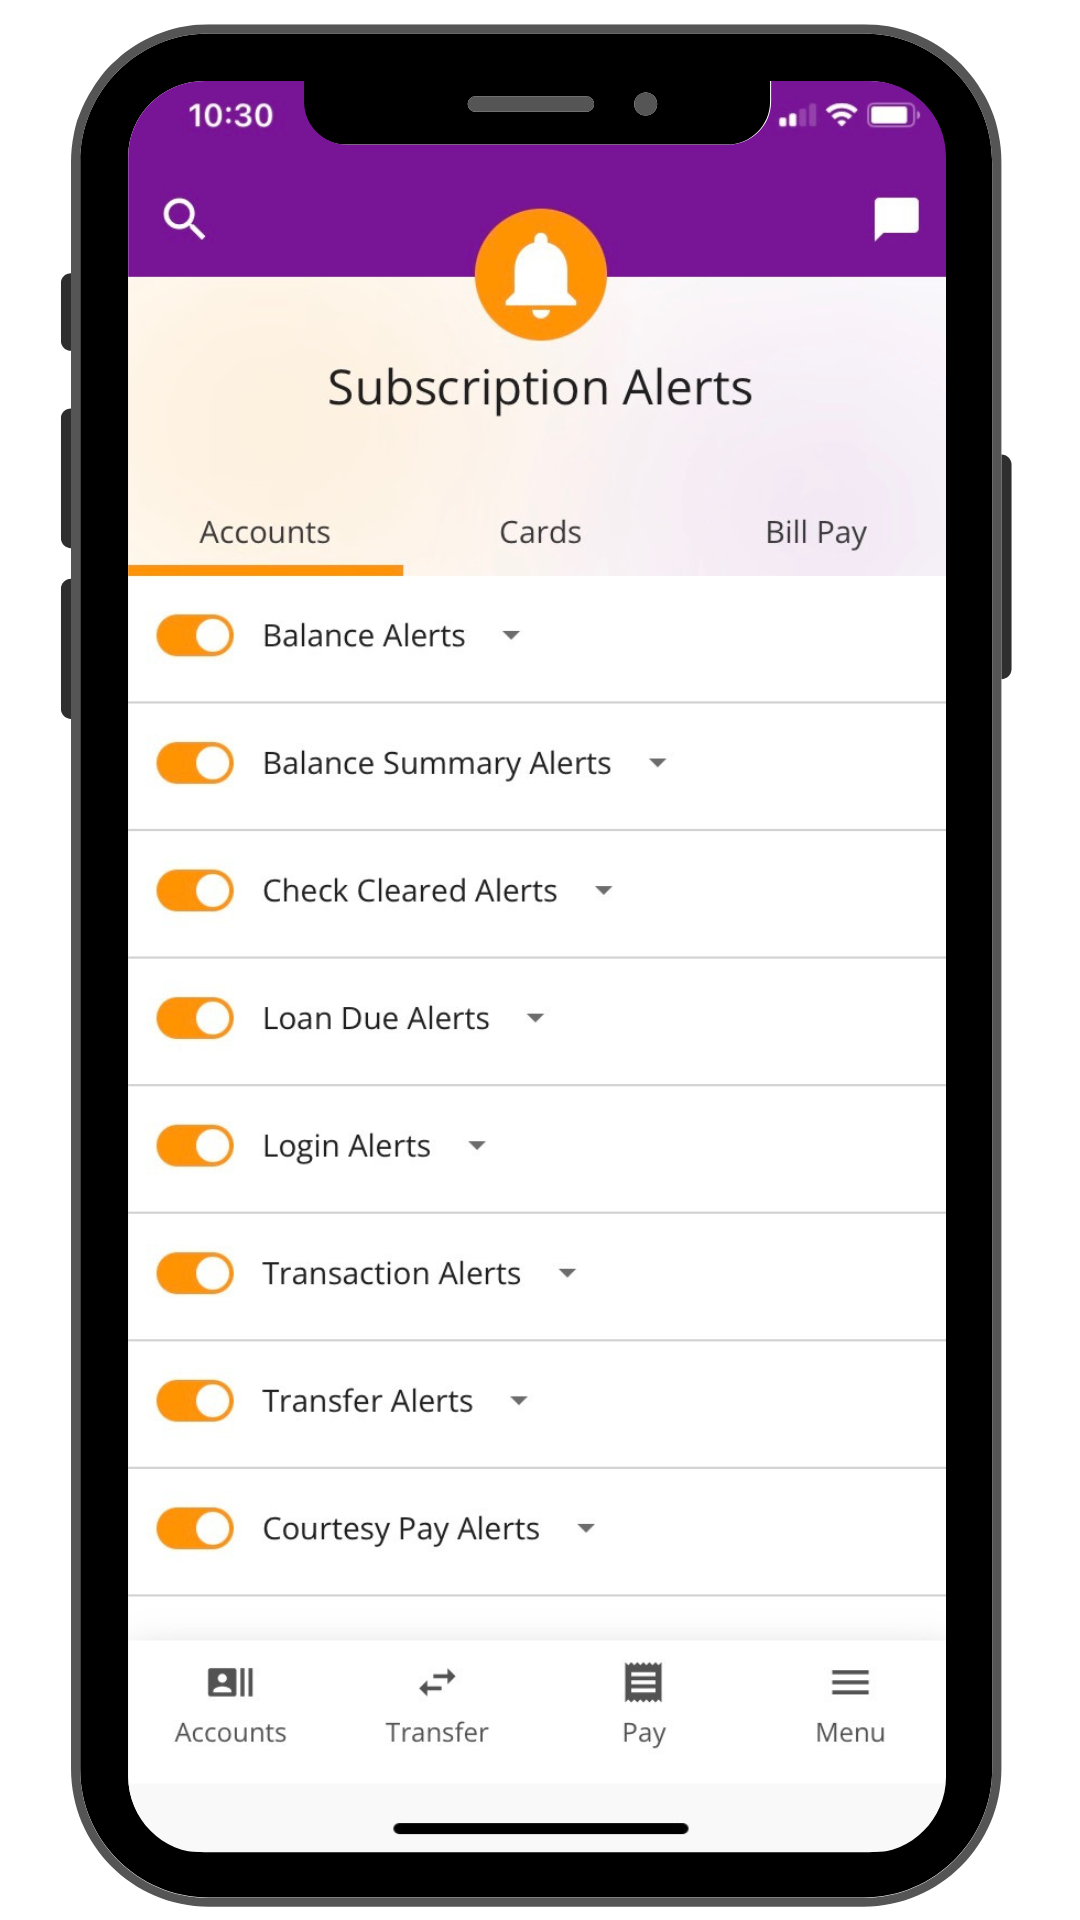 Sneak peek of alerts options in mobile app.